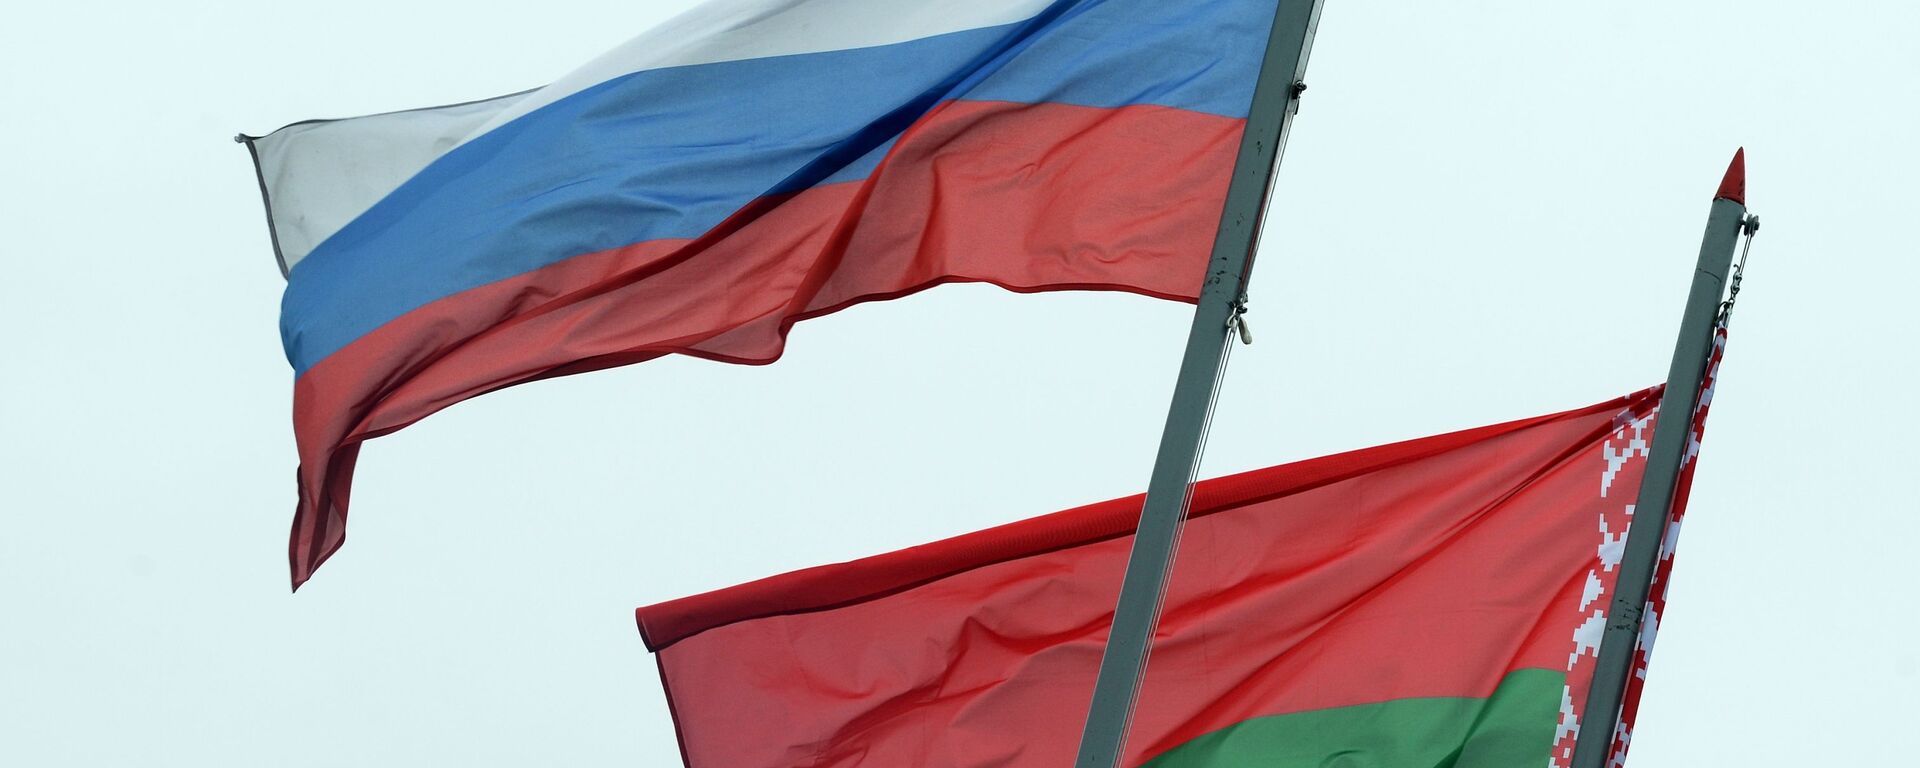 Banderas de Rusia y Bielorrusia - Sputnik Mundo, 1920, 19.06.2020